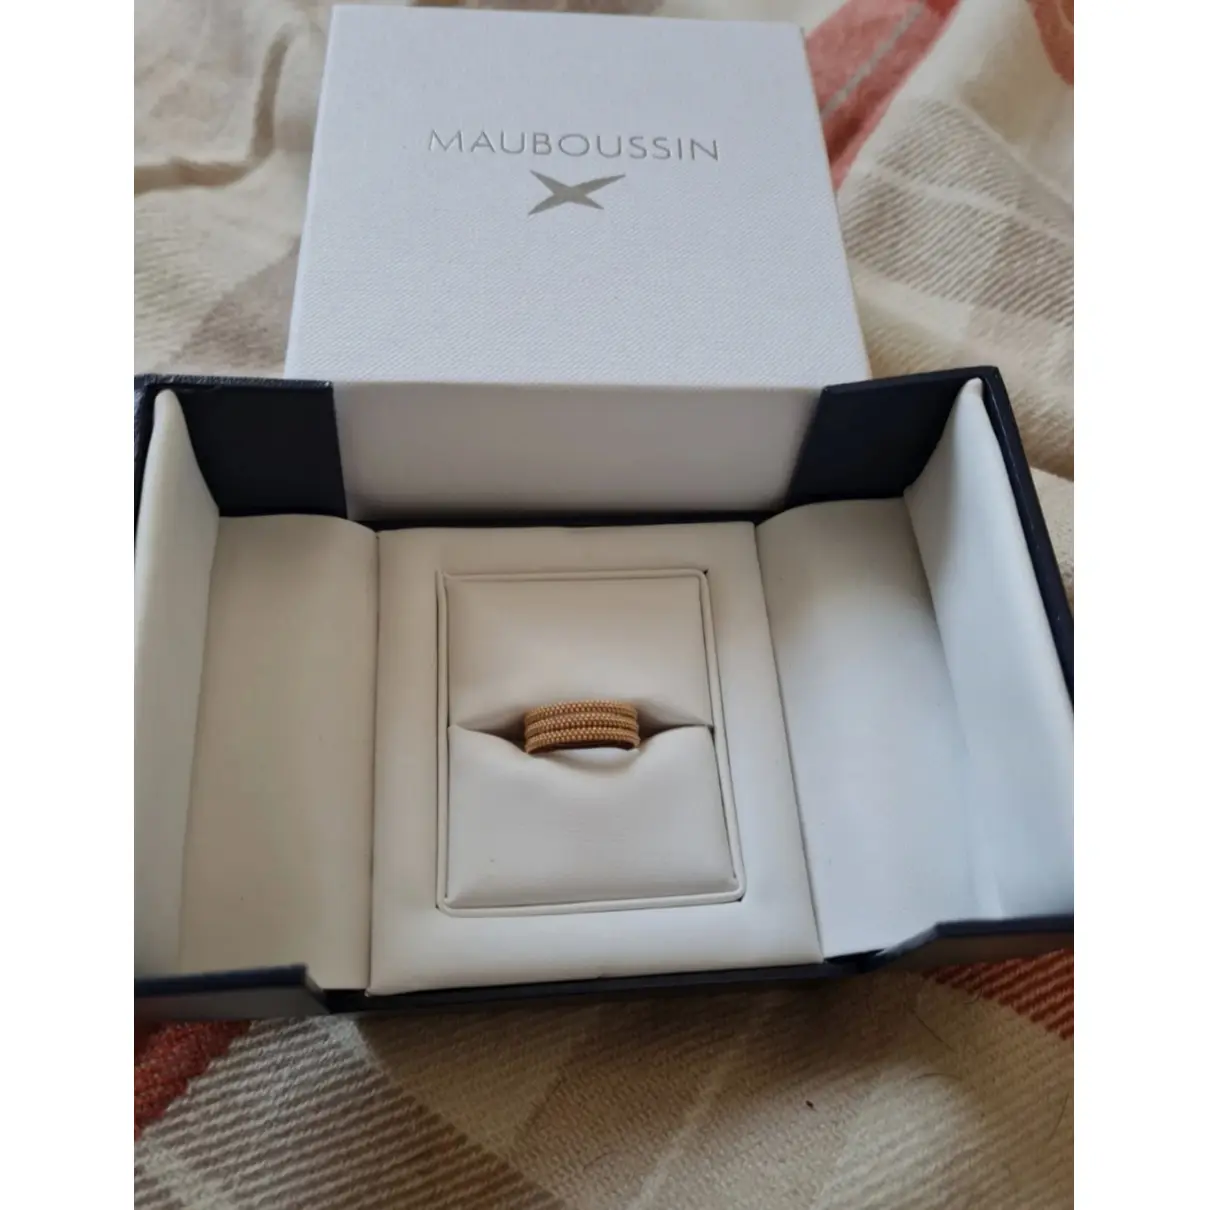 Luxury Mauboussin Rings Women